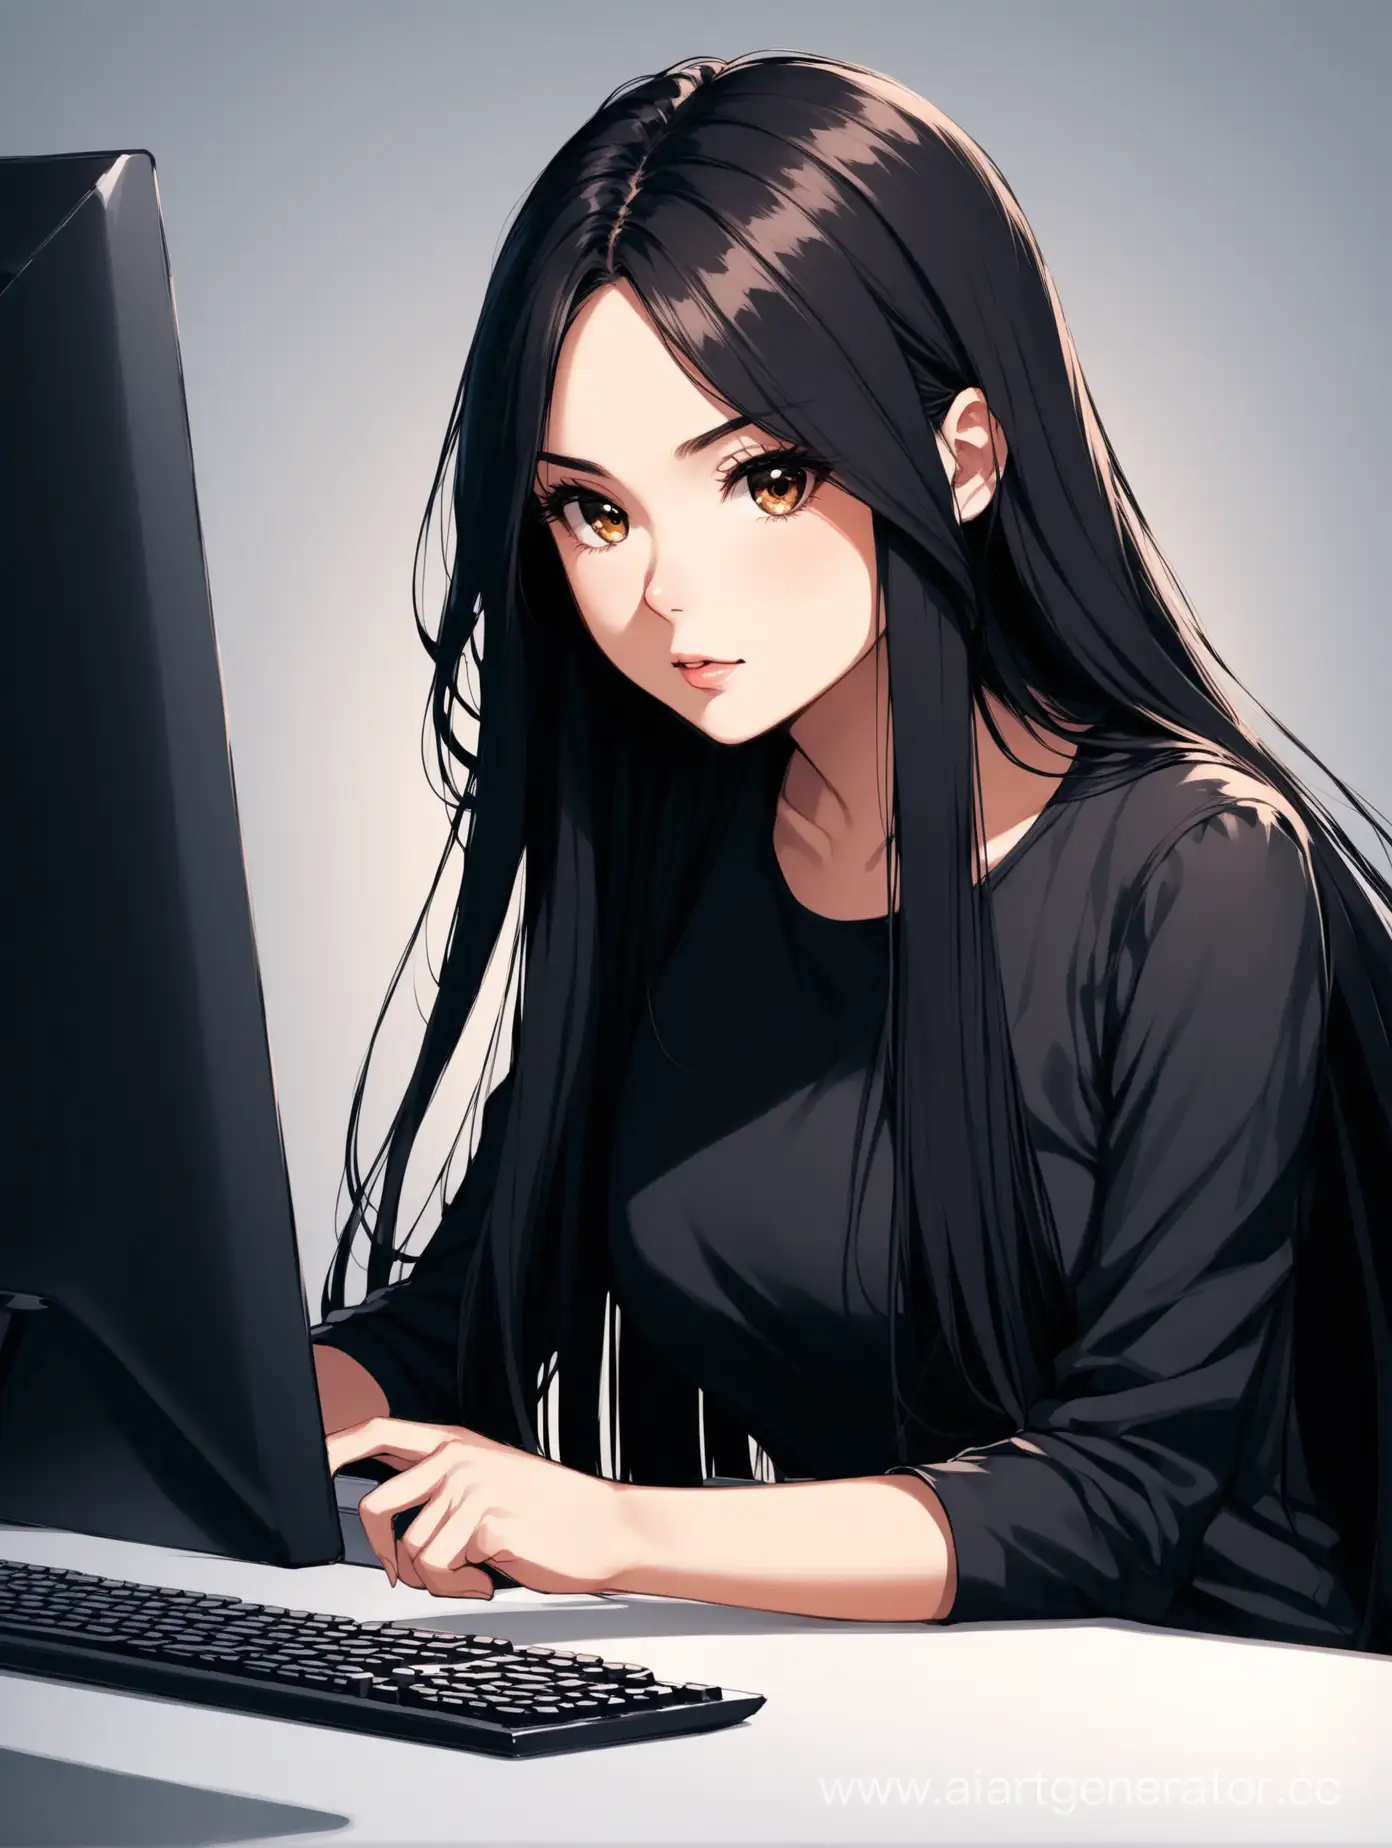 девушка дизайнер с темными длинными волосами за компьютером 